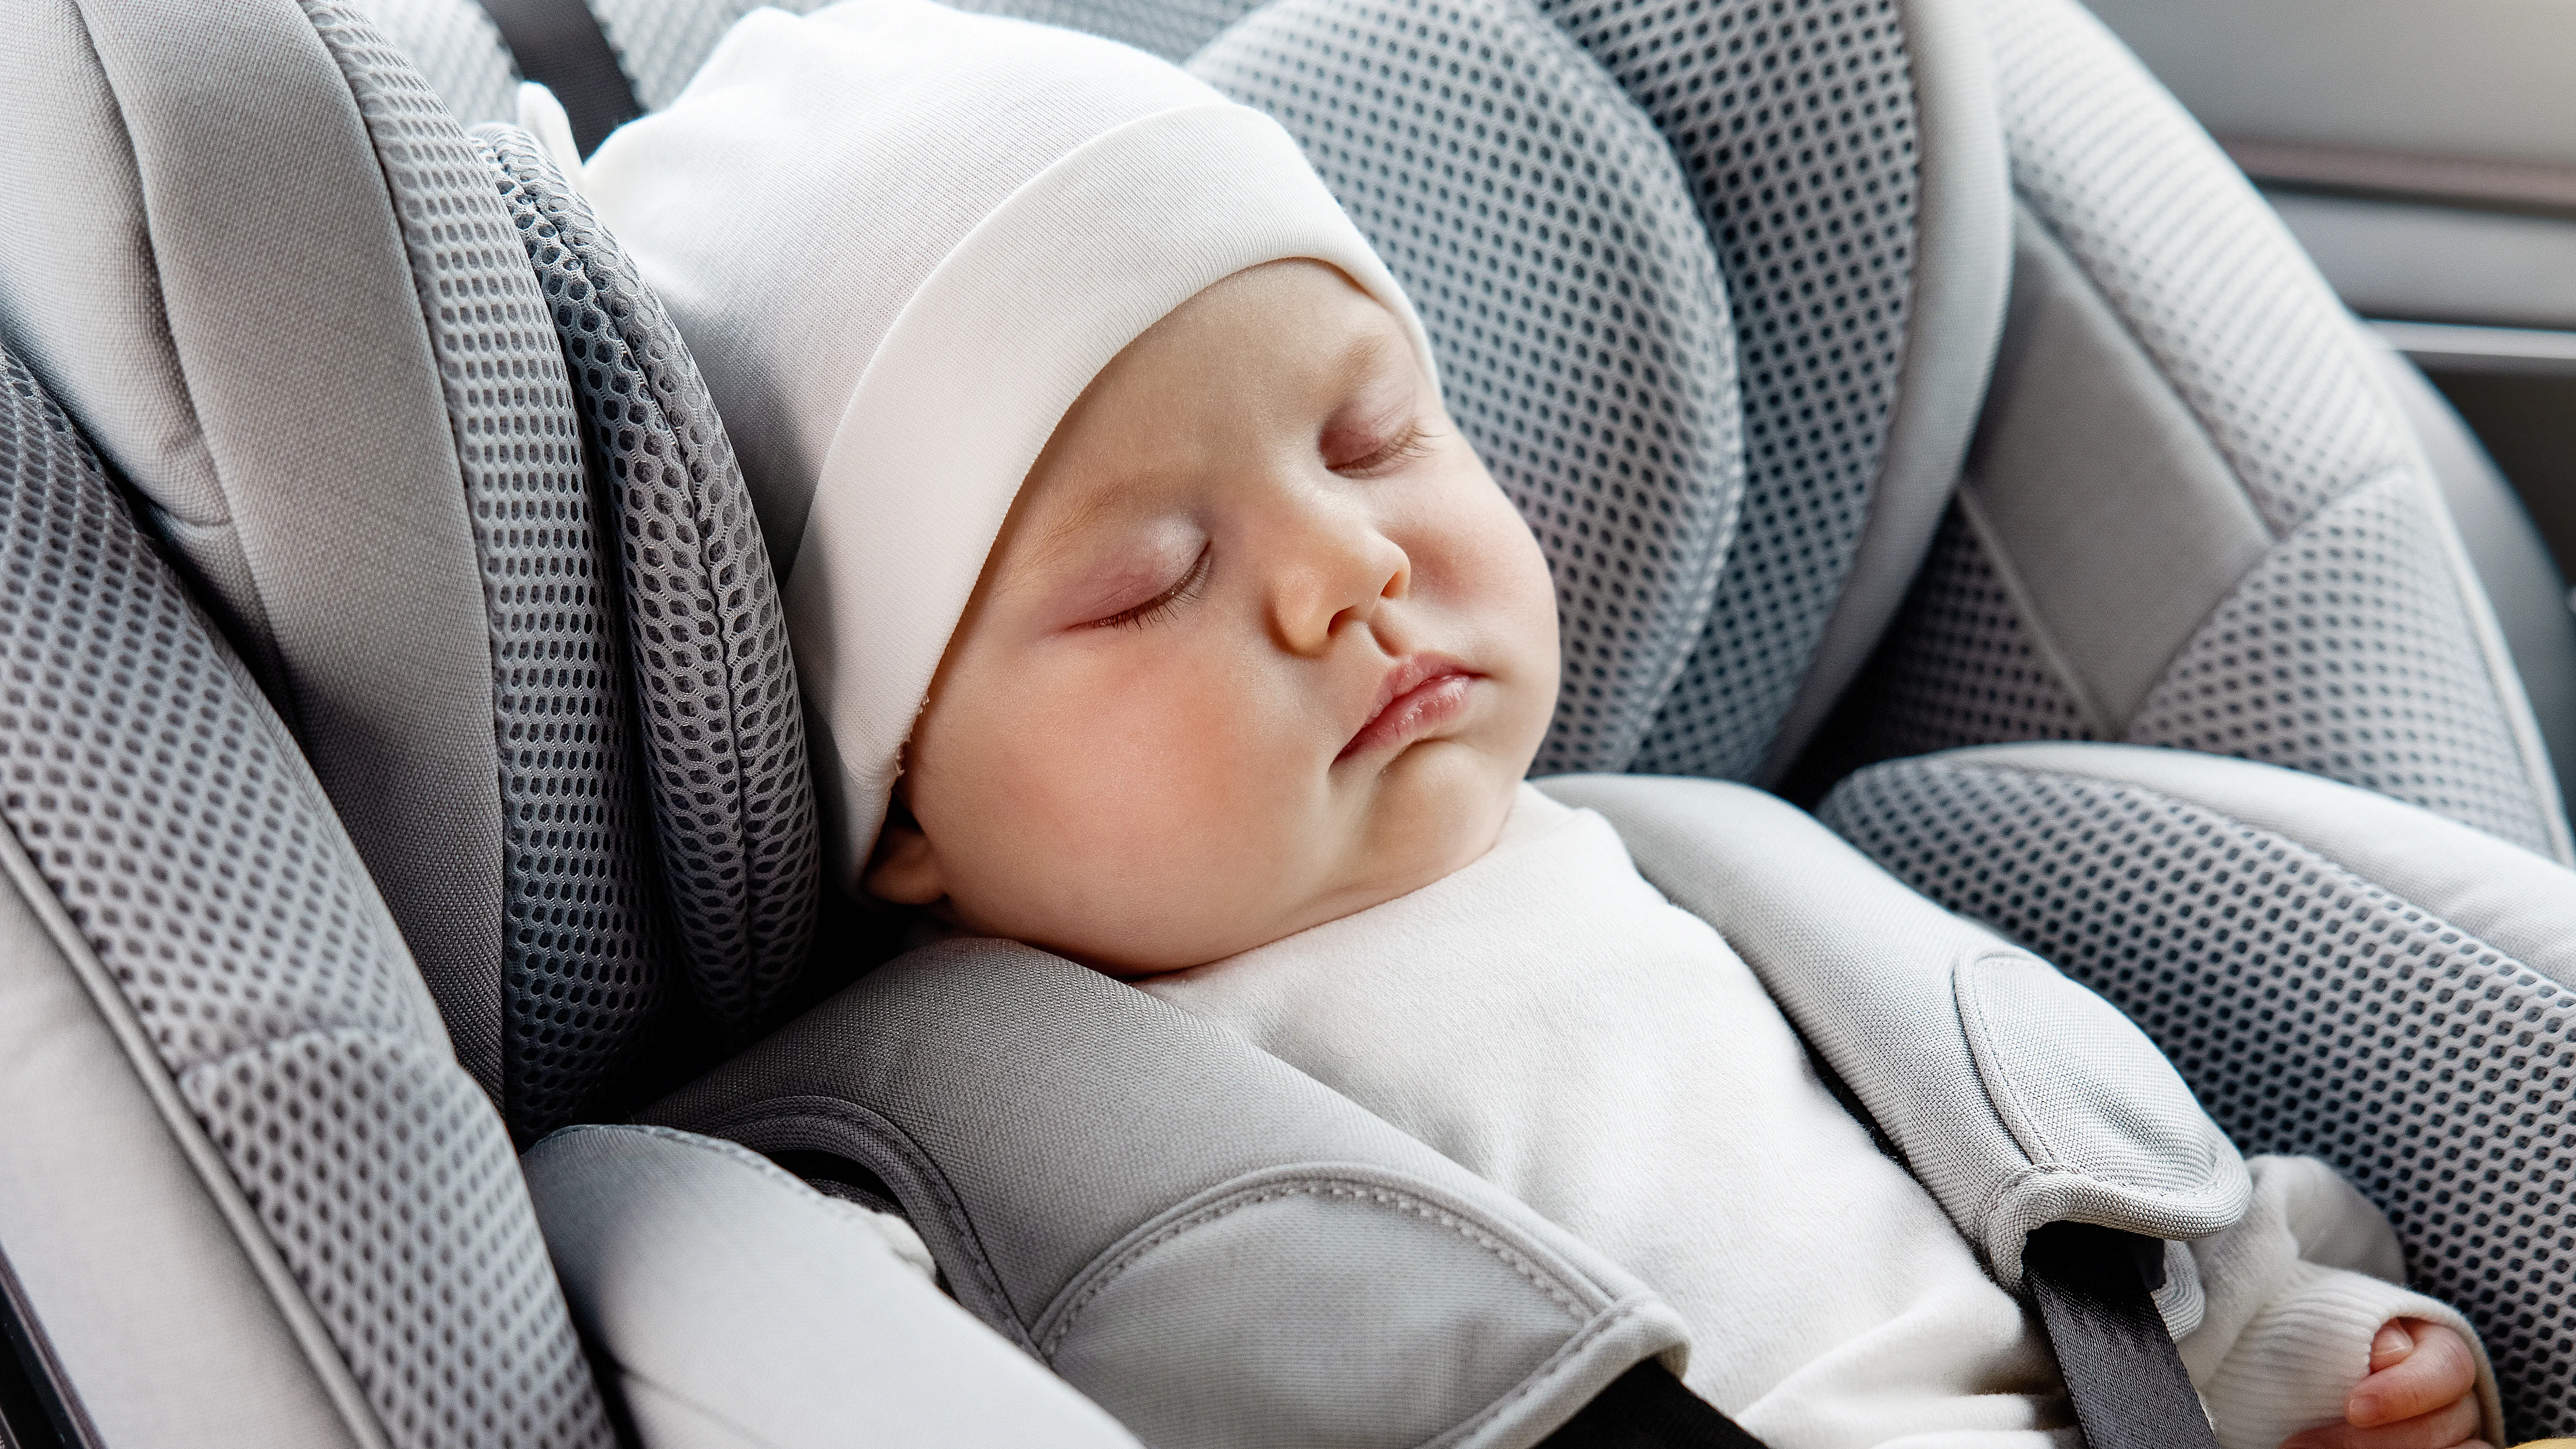 Una silla de coche para un bebé y un recién nacido: ¿Desde cuándo